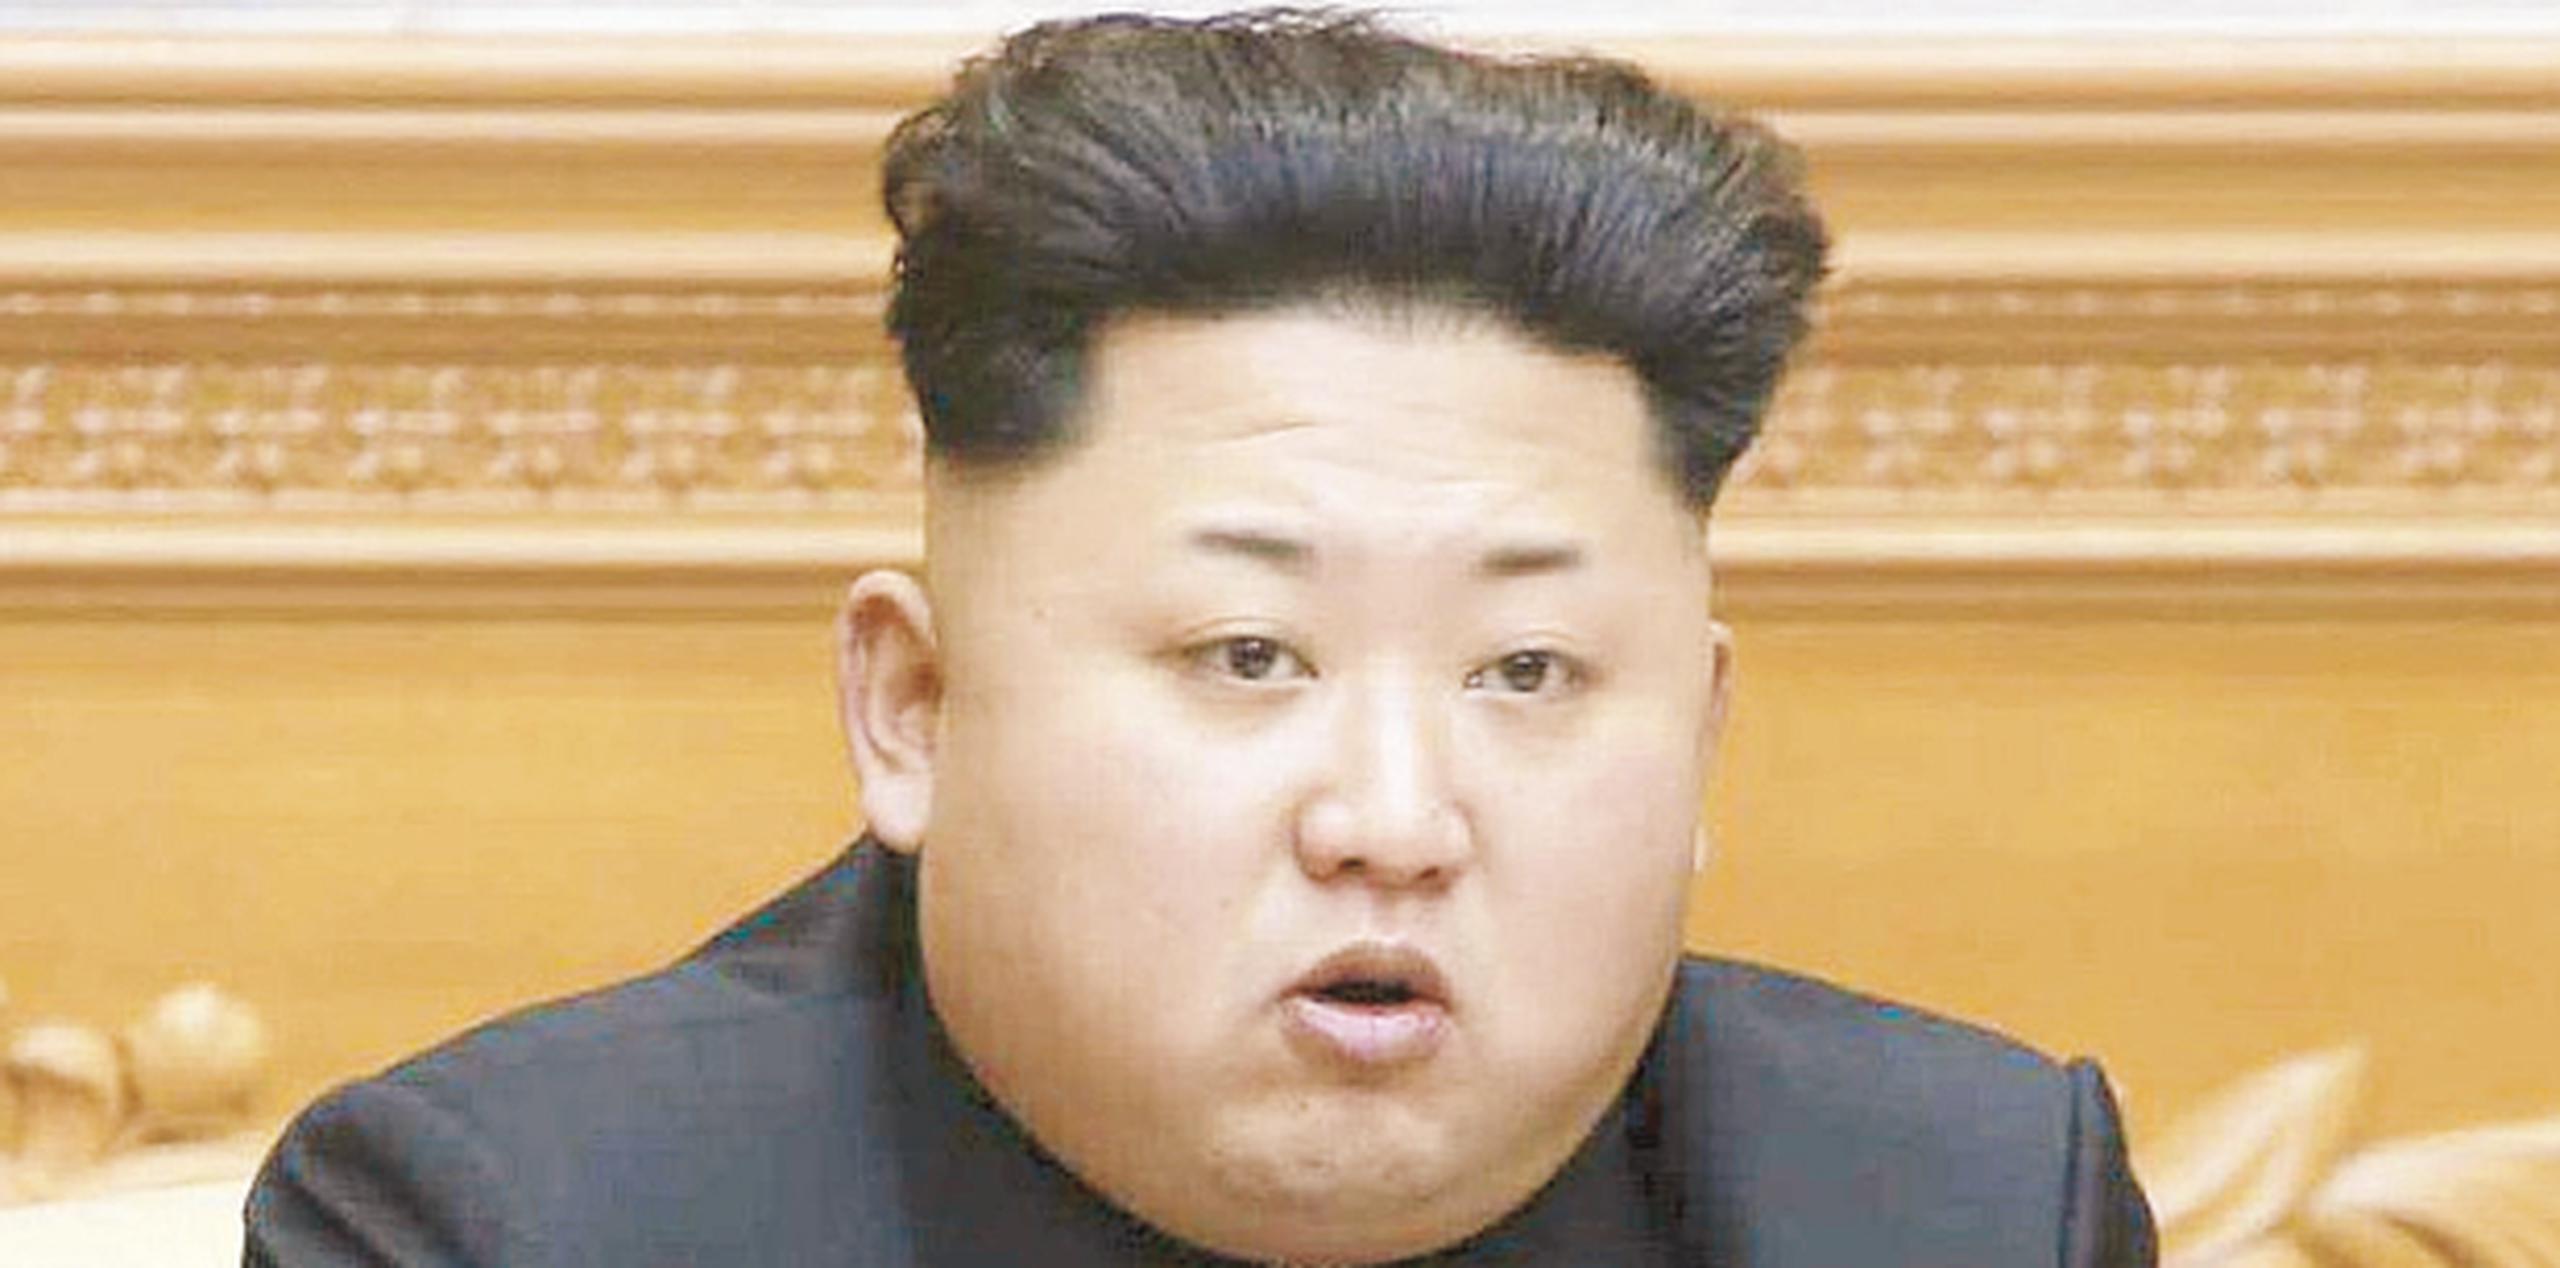 Kim Jong Un señaló que el lanzamiento envió una “seria advertencia” a Estados Unidos, que vertió amenazas de guerra y sanciones más duras a la hermética nación, apuntó la agencia. (Archivo)